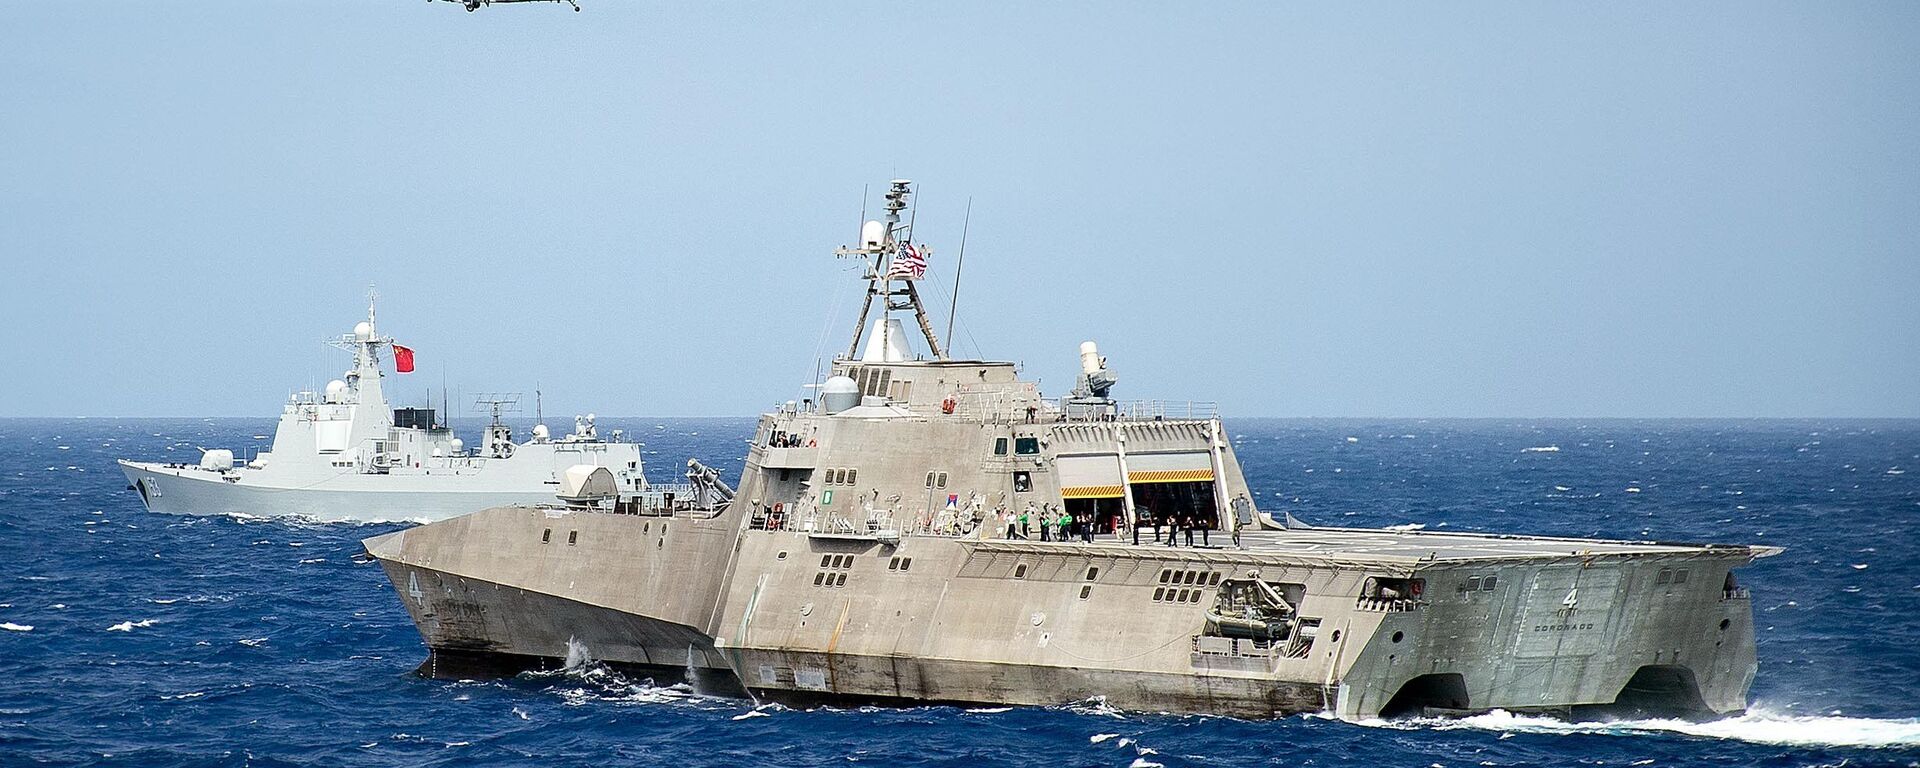 Tàu Hải quân Mỹ LCS Coronado trong cuộc tập trận ở khu vực châu Á - Thái Bình Dương trên Thái Bình Dương. 2016 tháng 7. - Sputnik Việt Nam, 1920, 15.03.2023